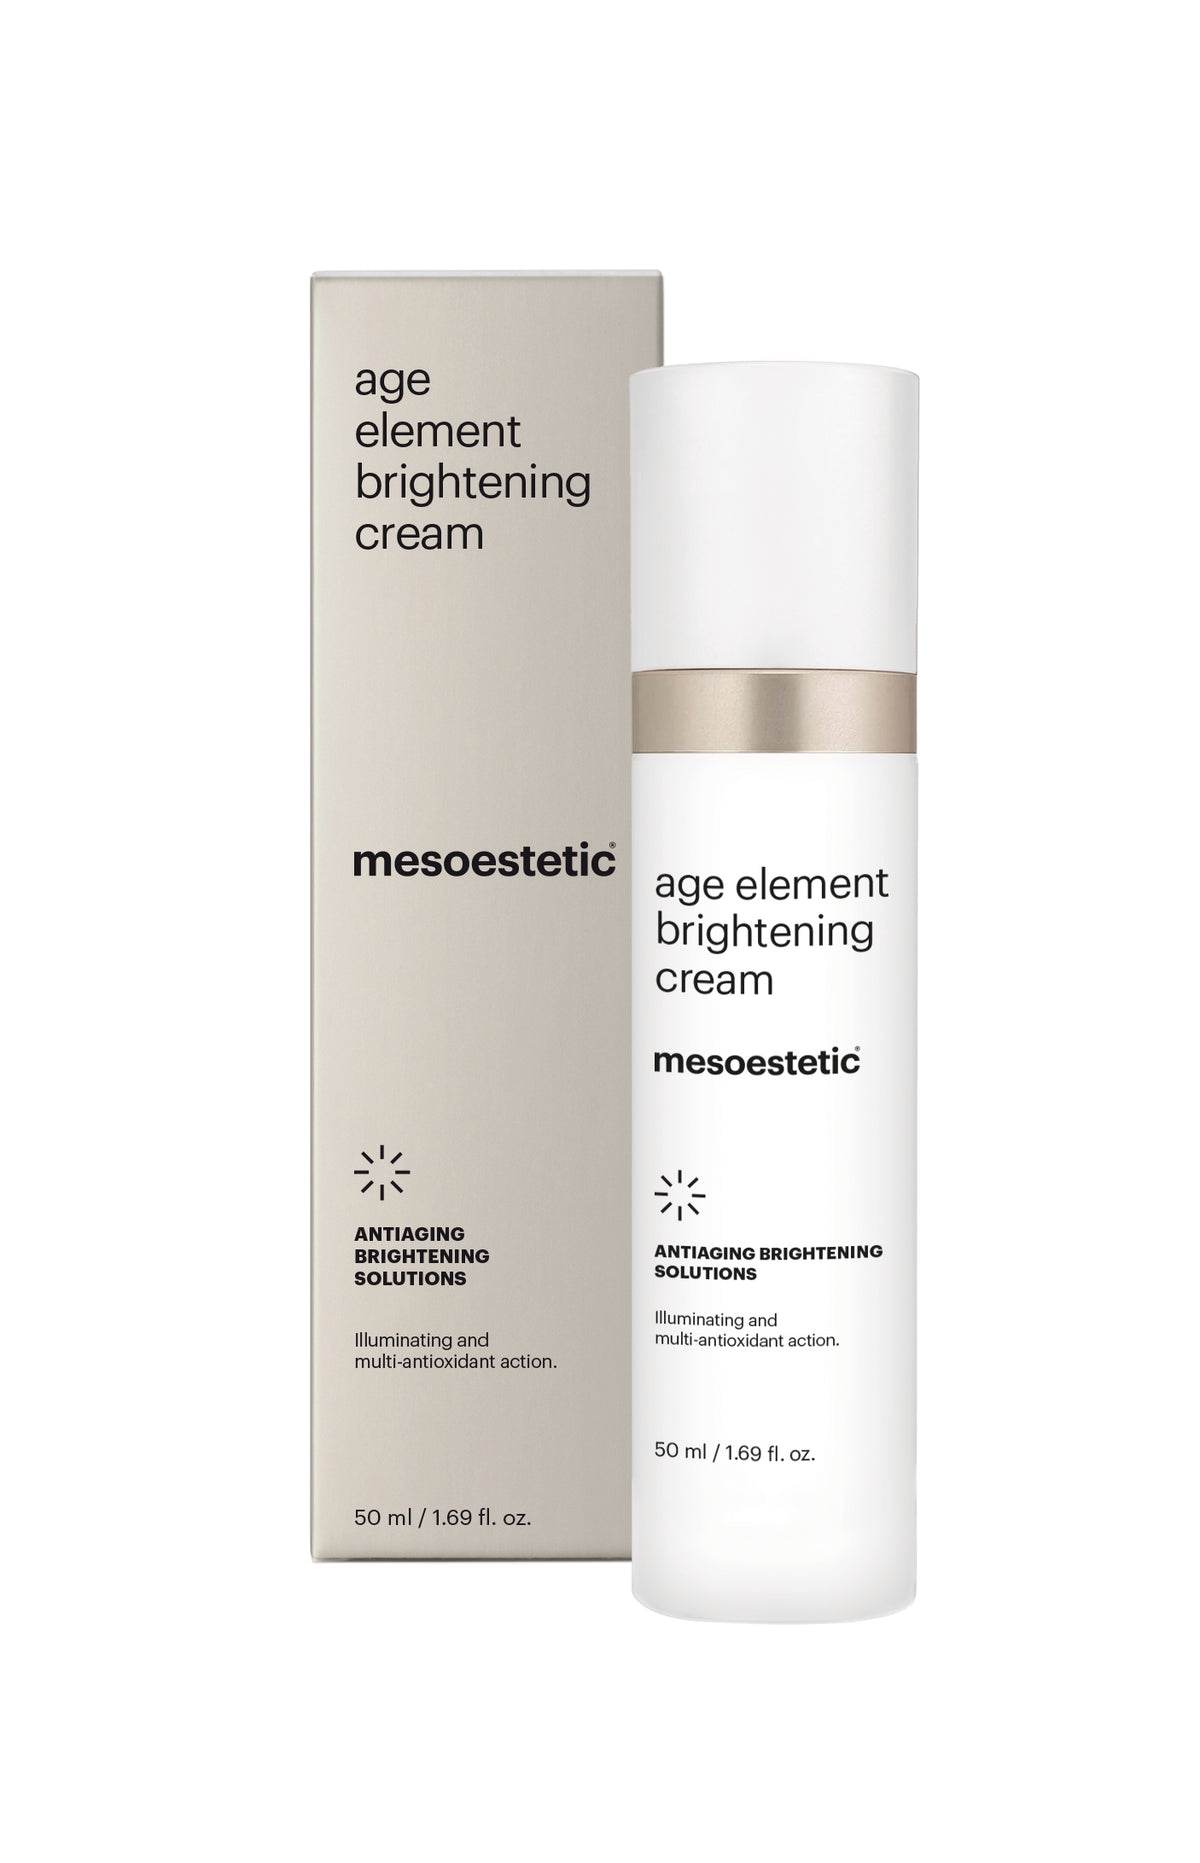 mesoestetic 水光維 C 淨白乳霜 age element brightening cream